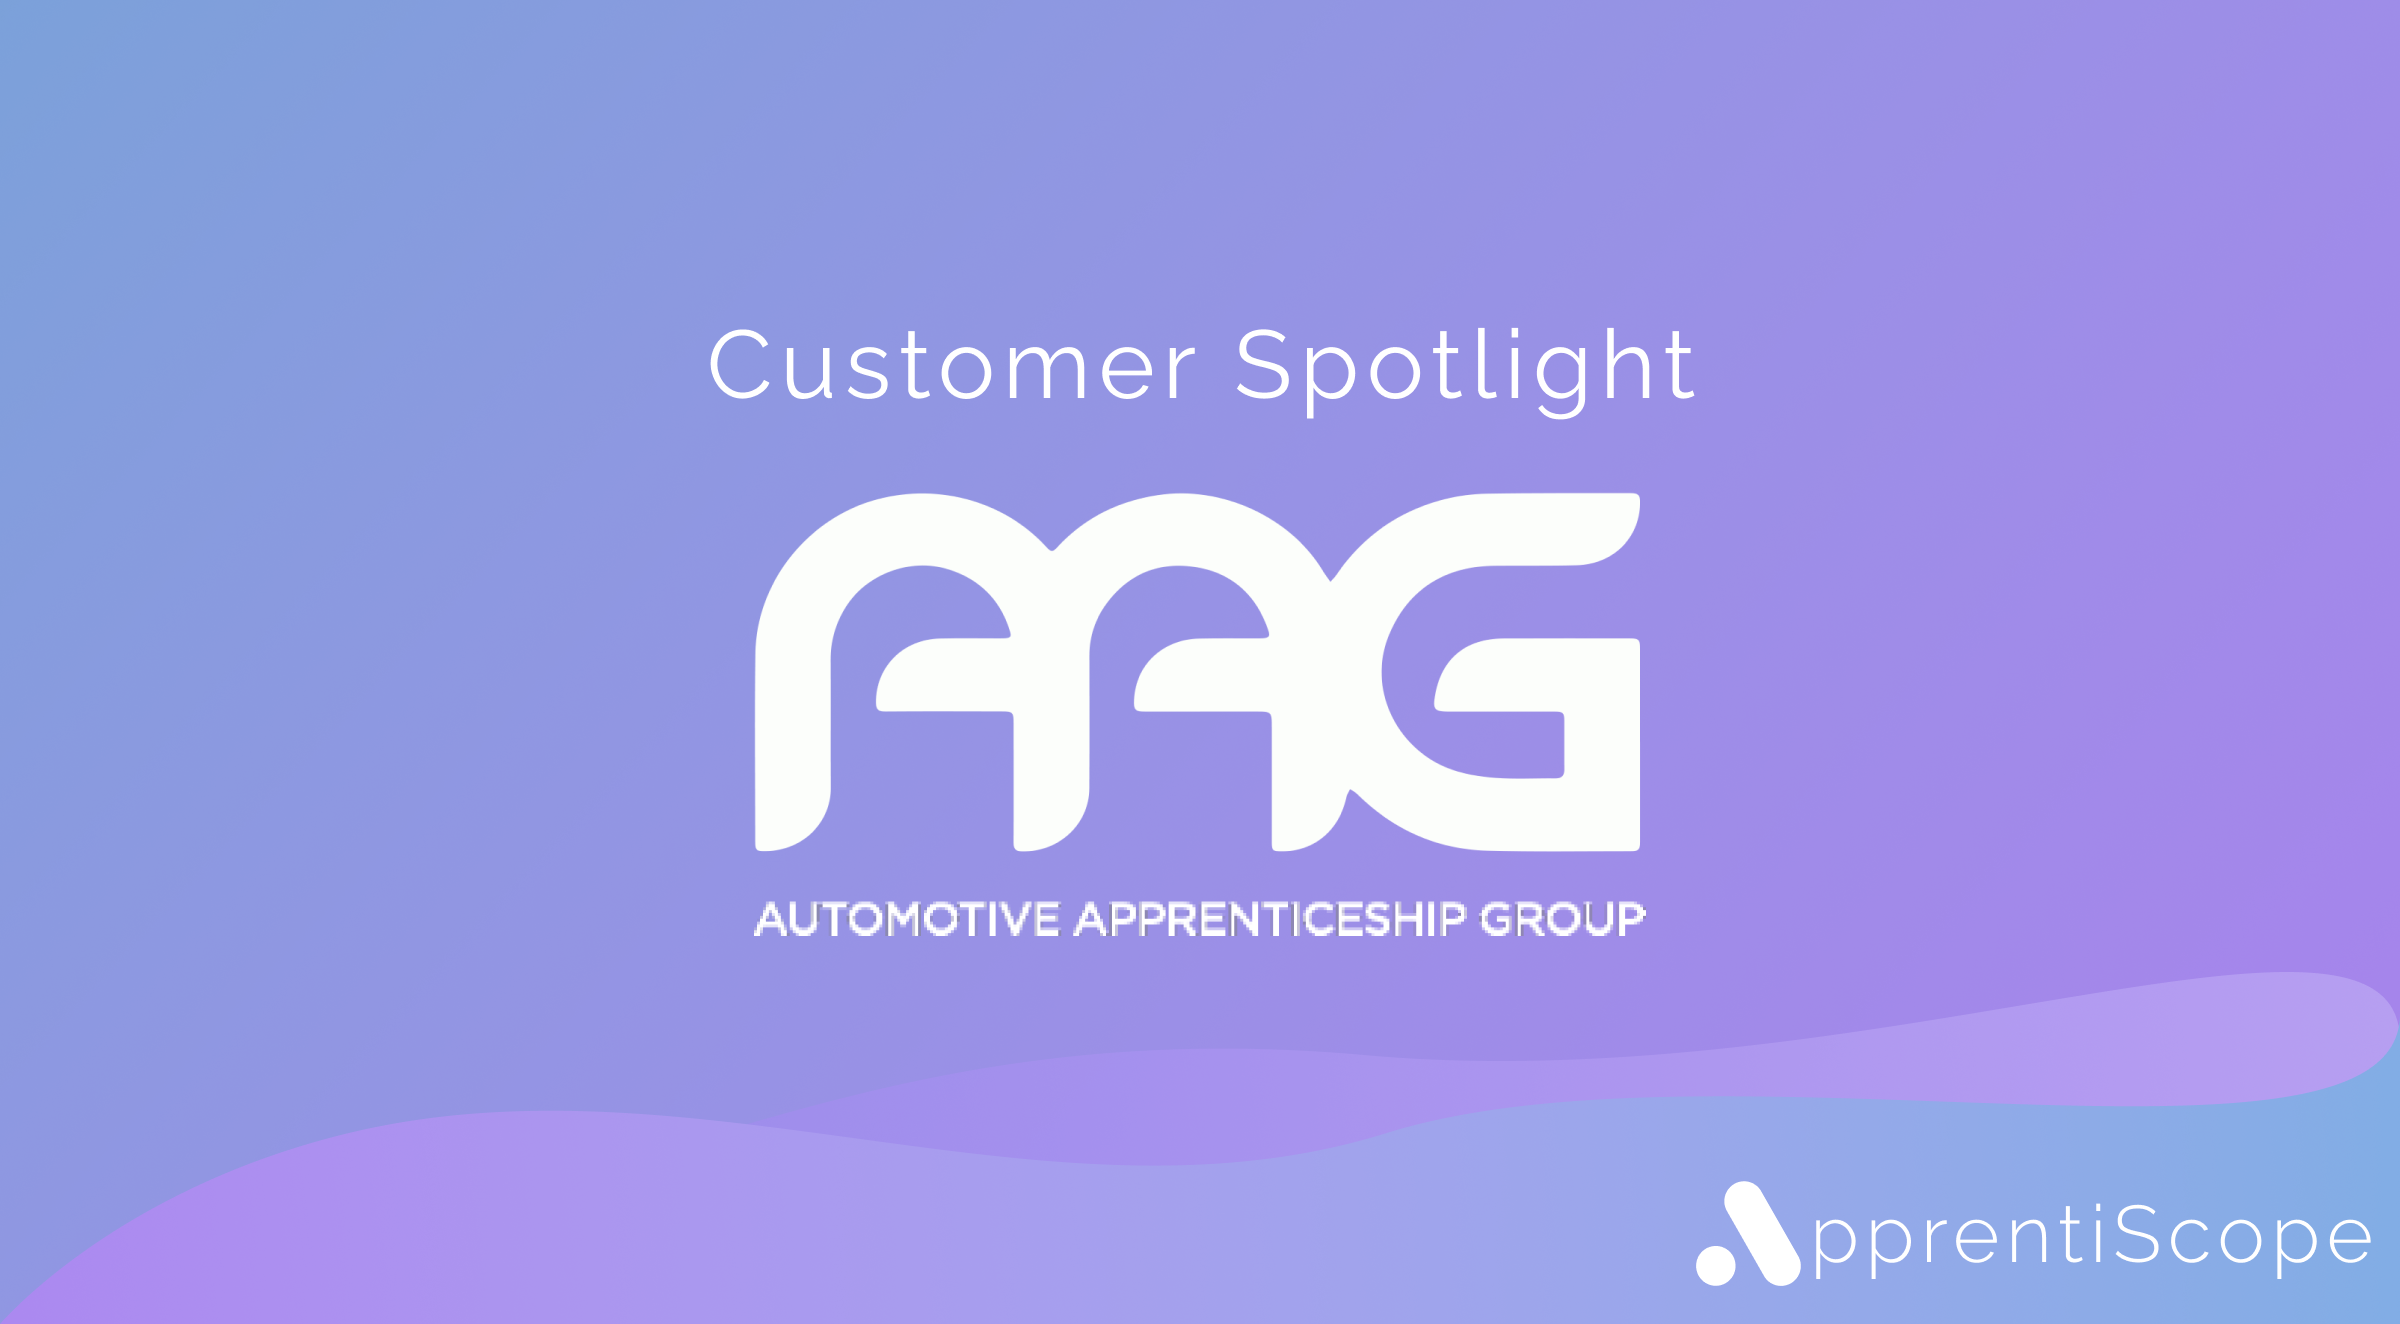 AAG Customer Spotlight asset.